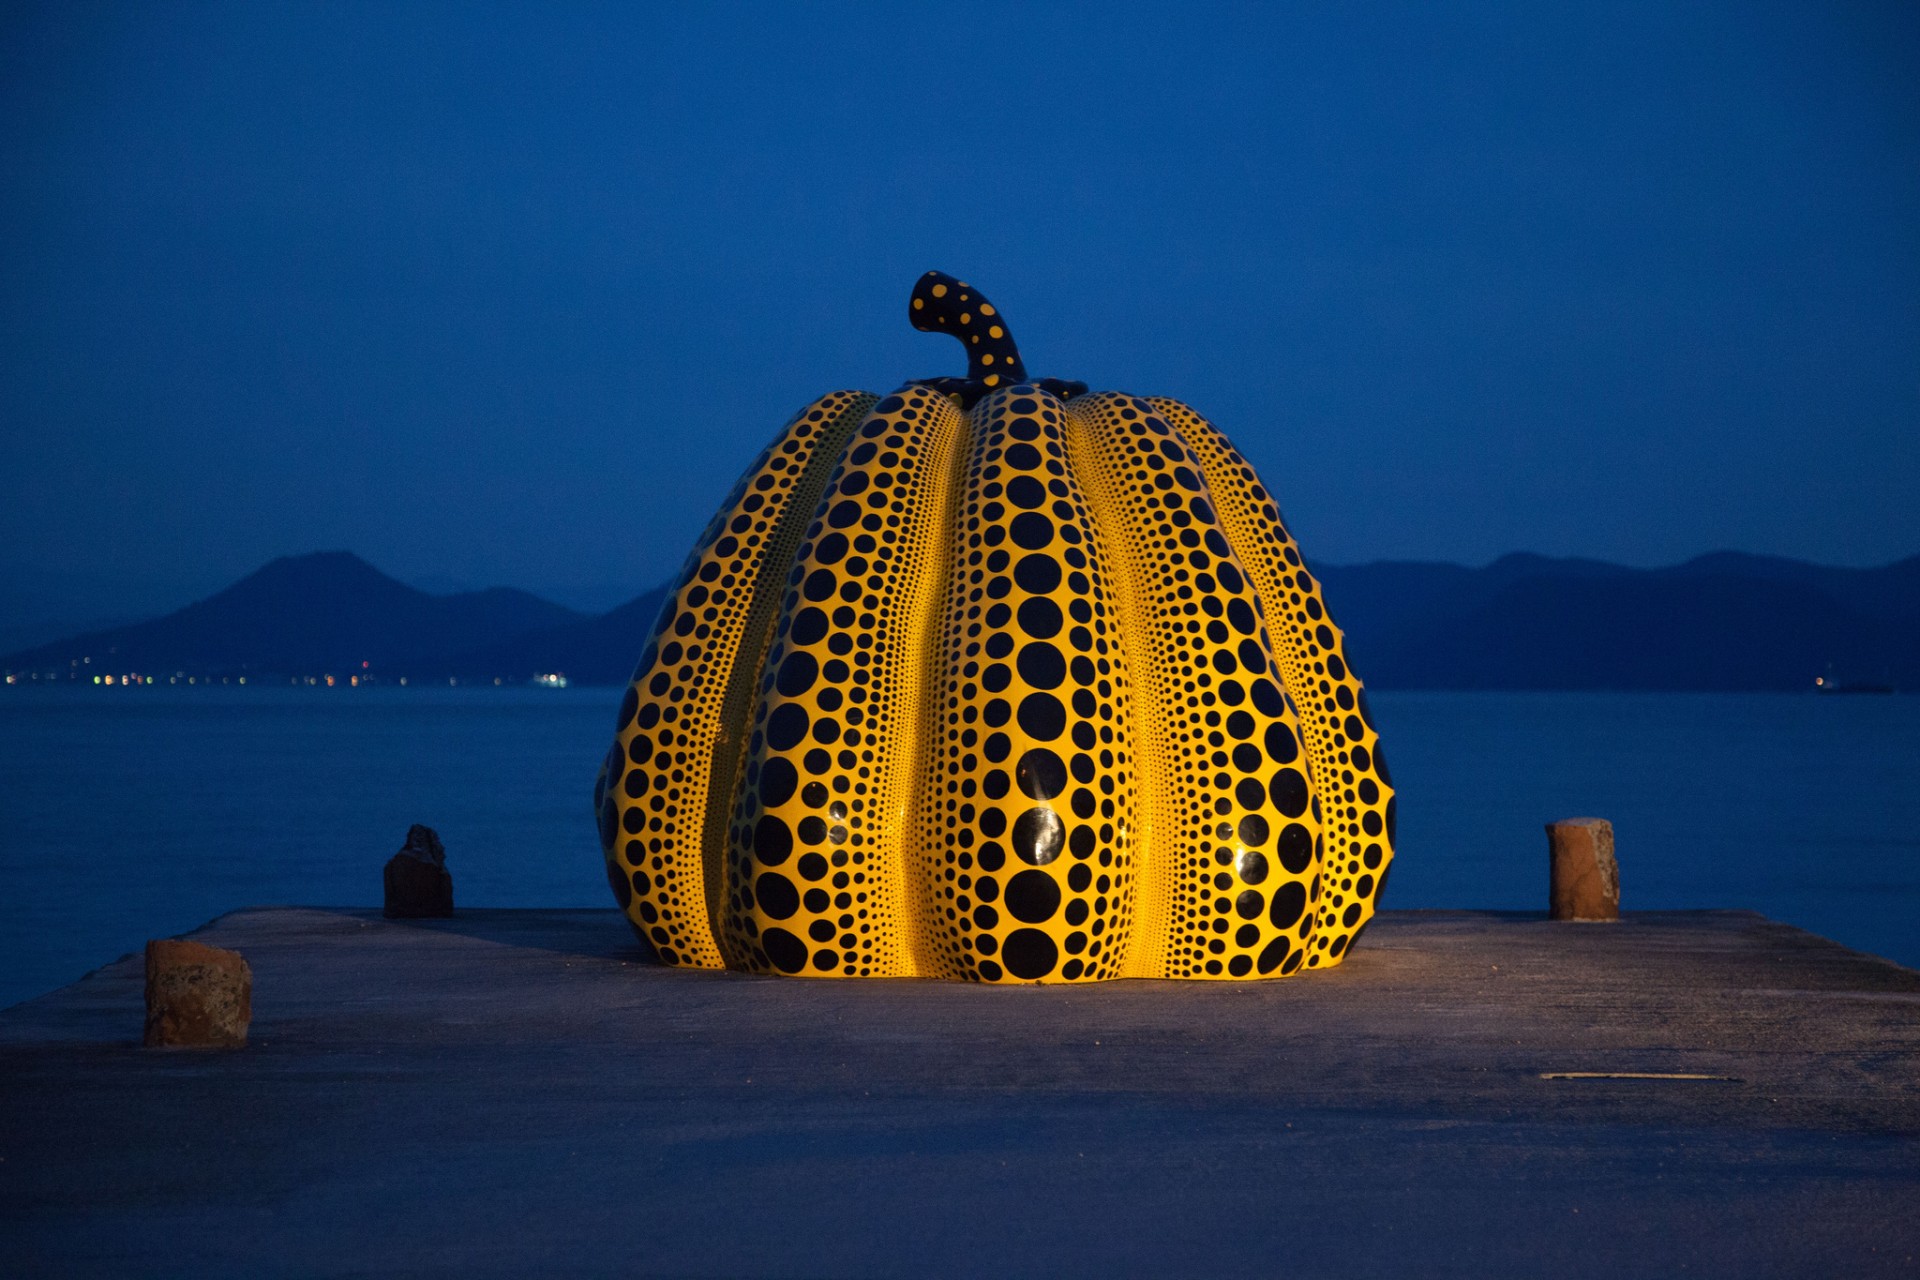 "Pumpkin” by Yayoi Kusama in Naoshima